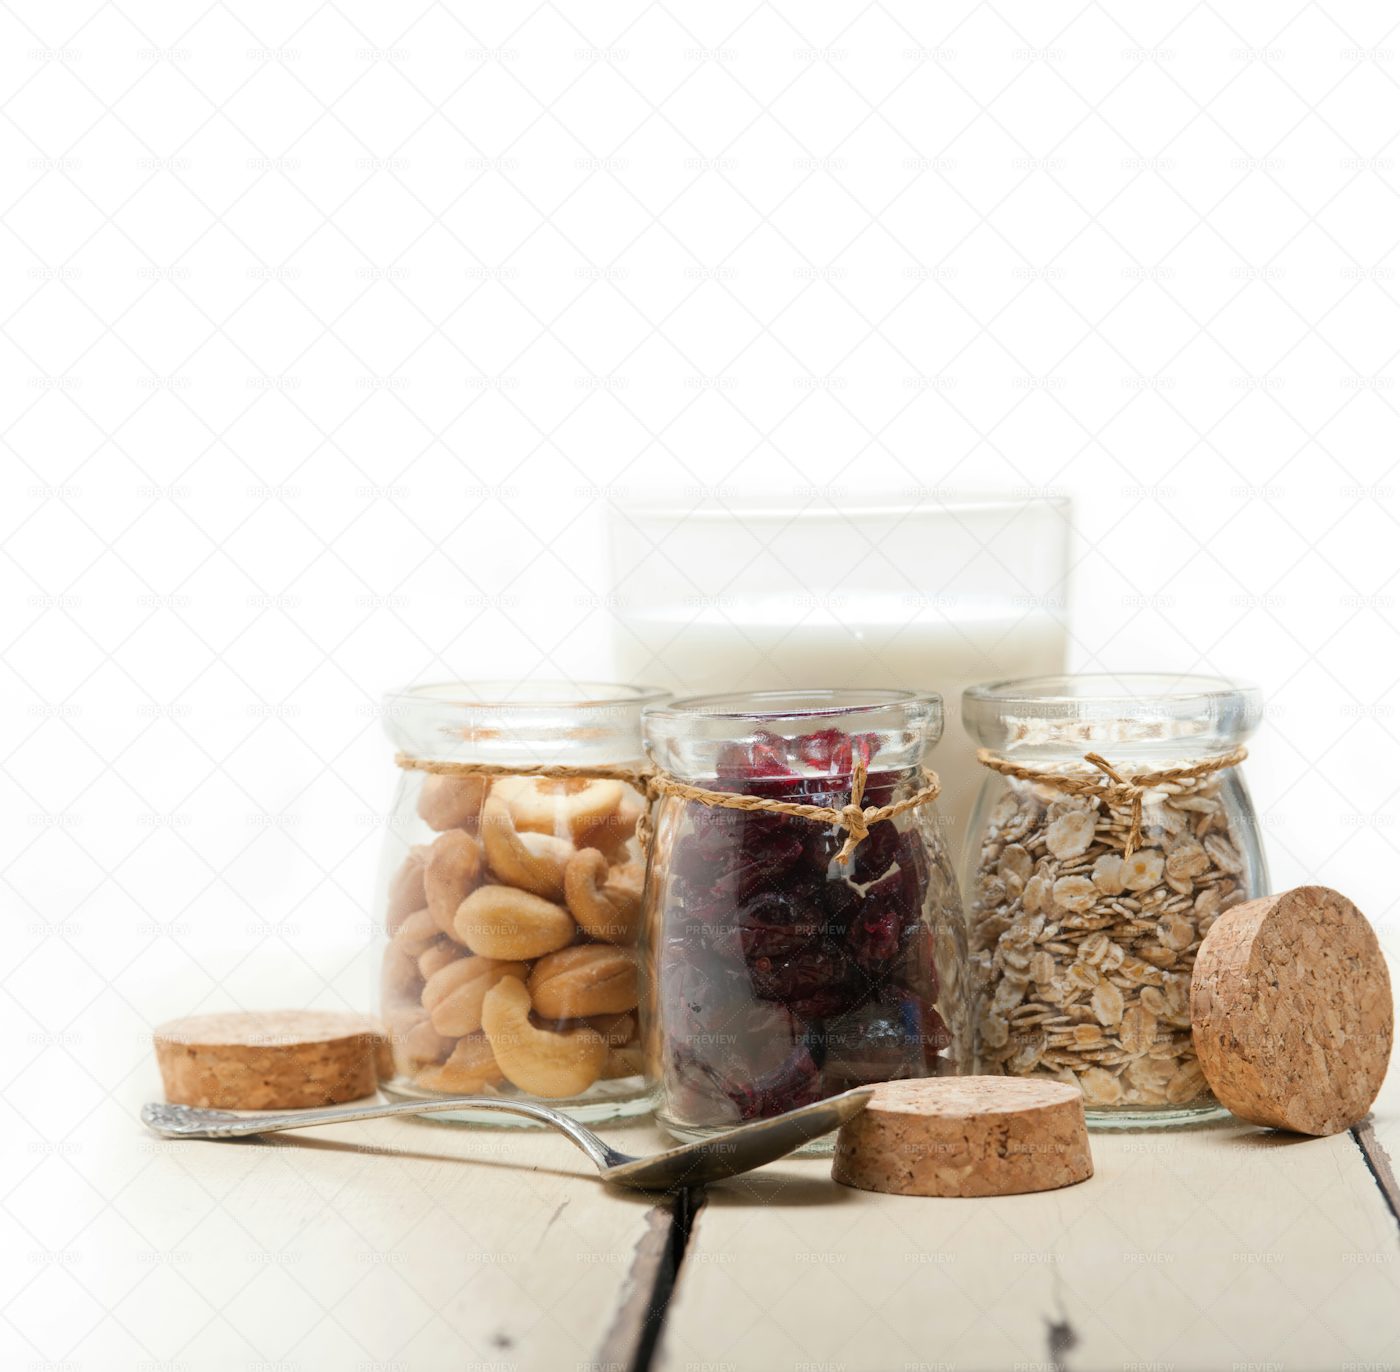 Healthy Breakfast Ingredients In Jars: Stock Photos